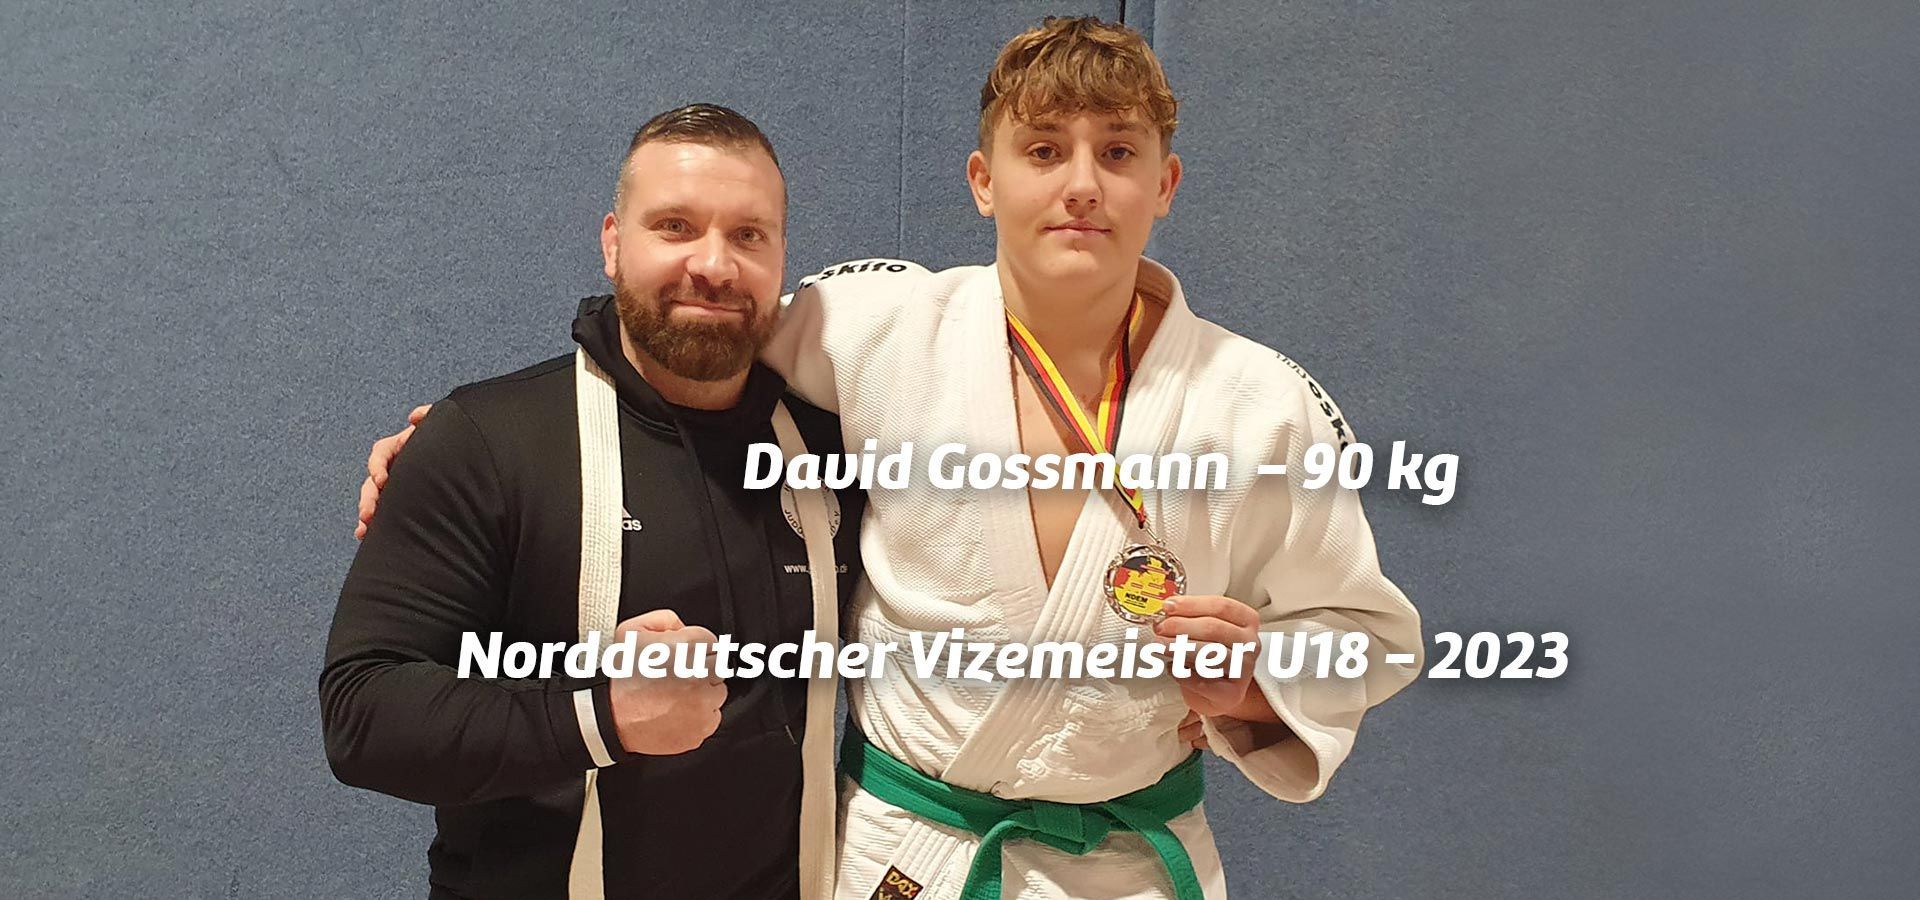 David Gossmann - Norddeutscher Vizemeister U18 bis 90 kg